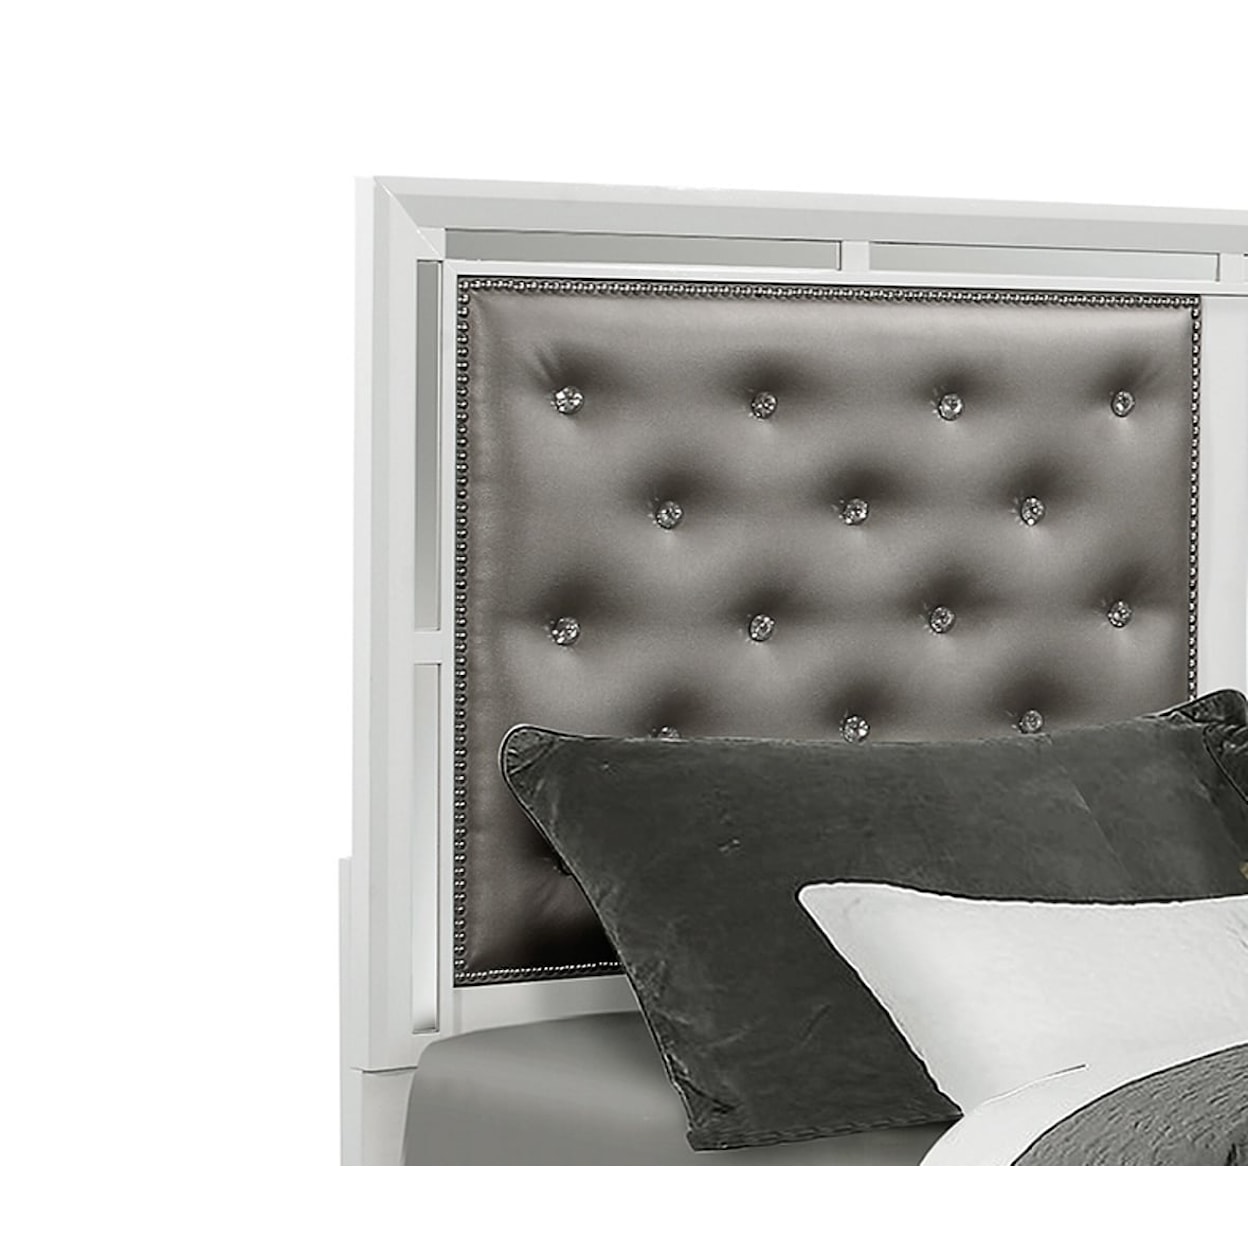 Global Furniture Mackenzie Queen Panel Bed